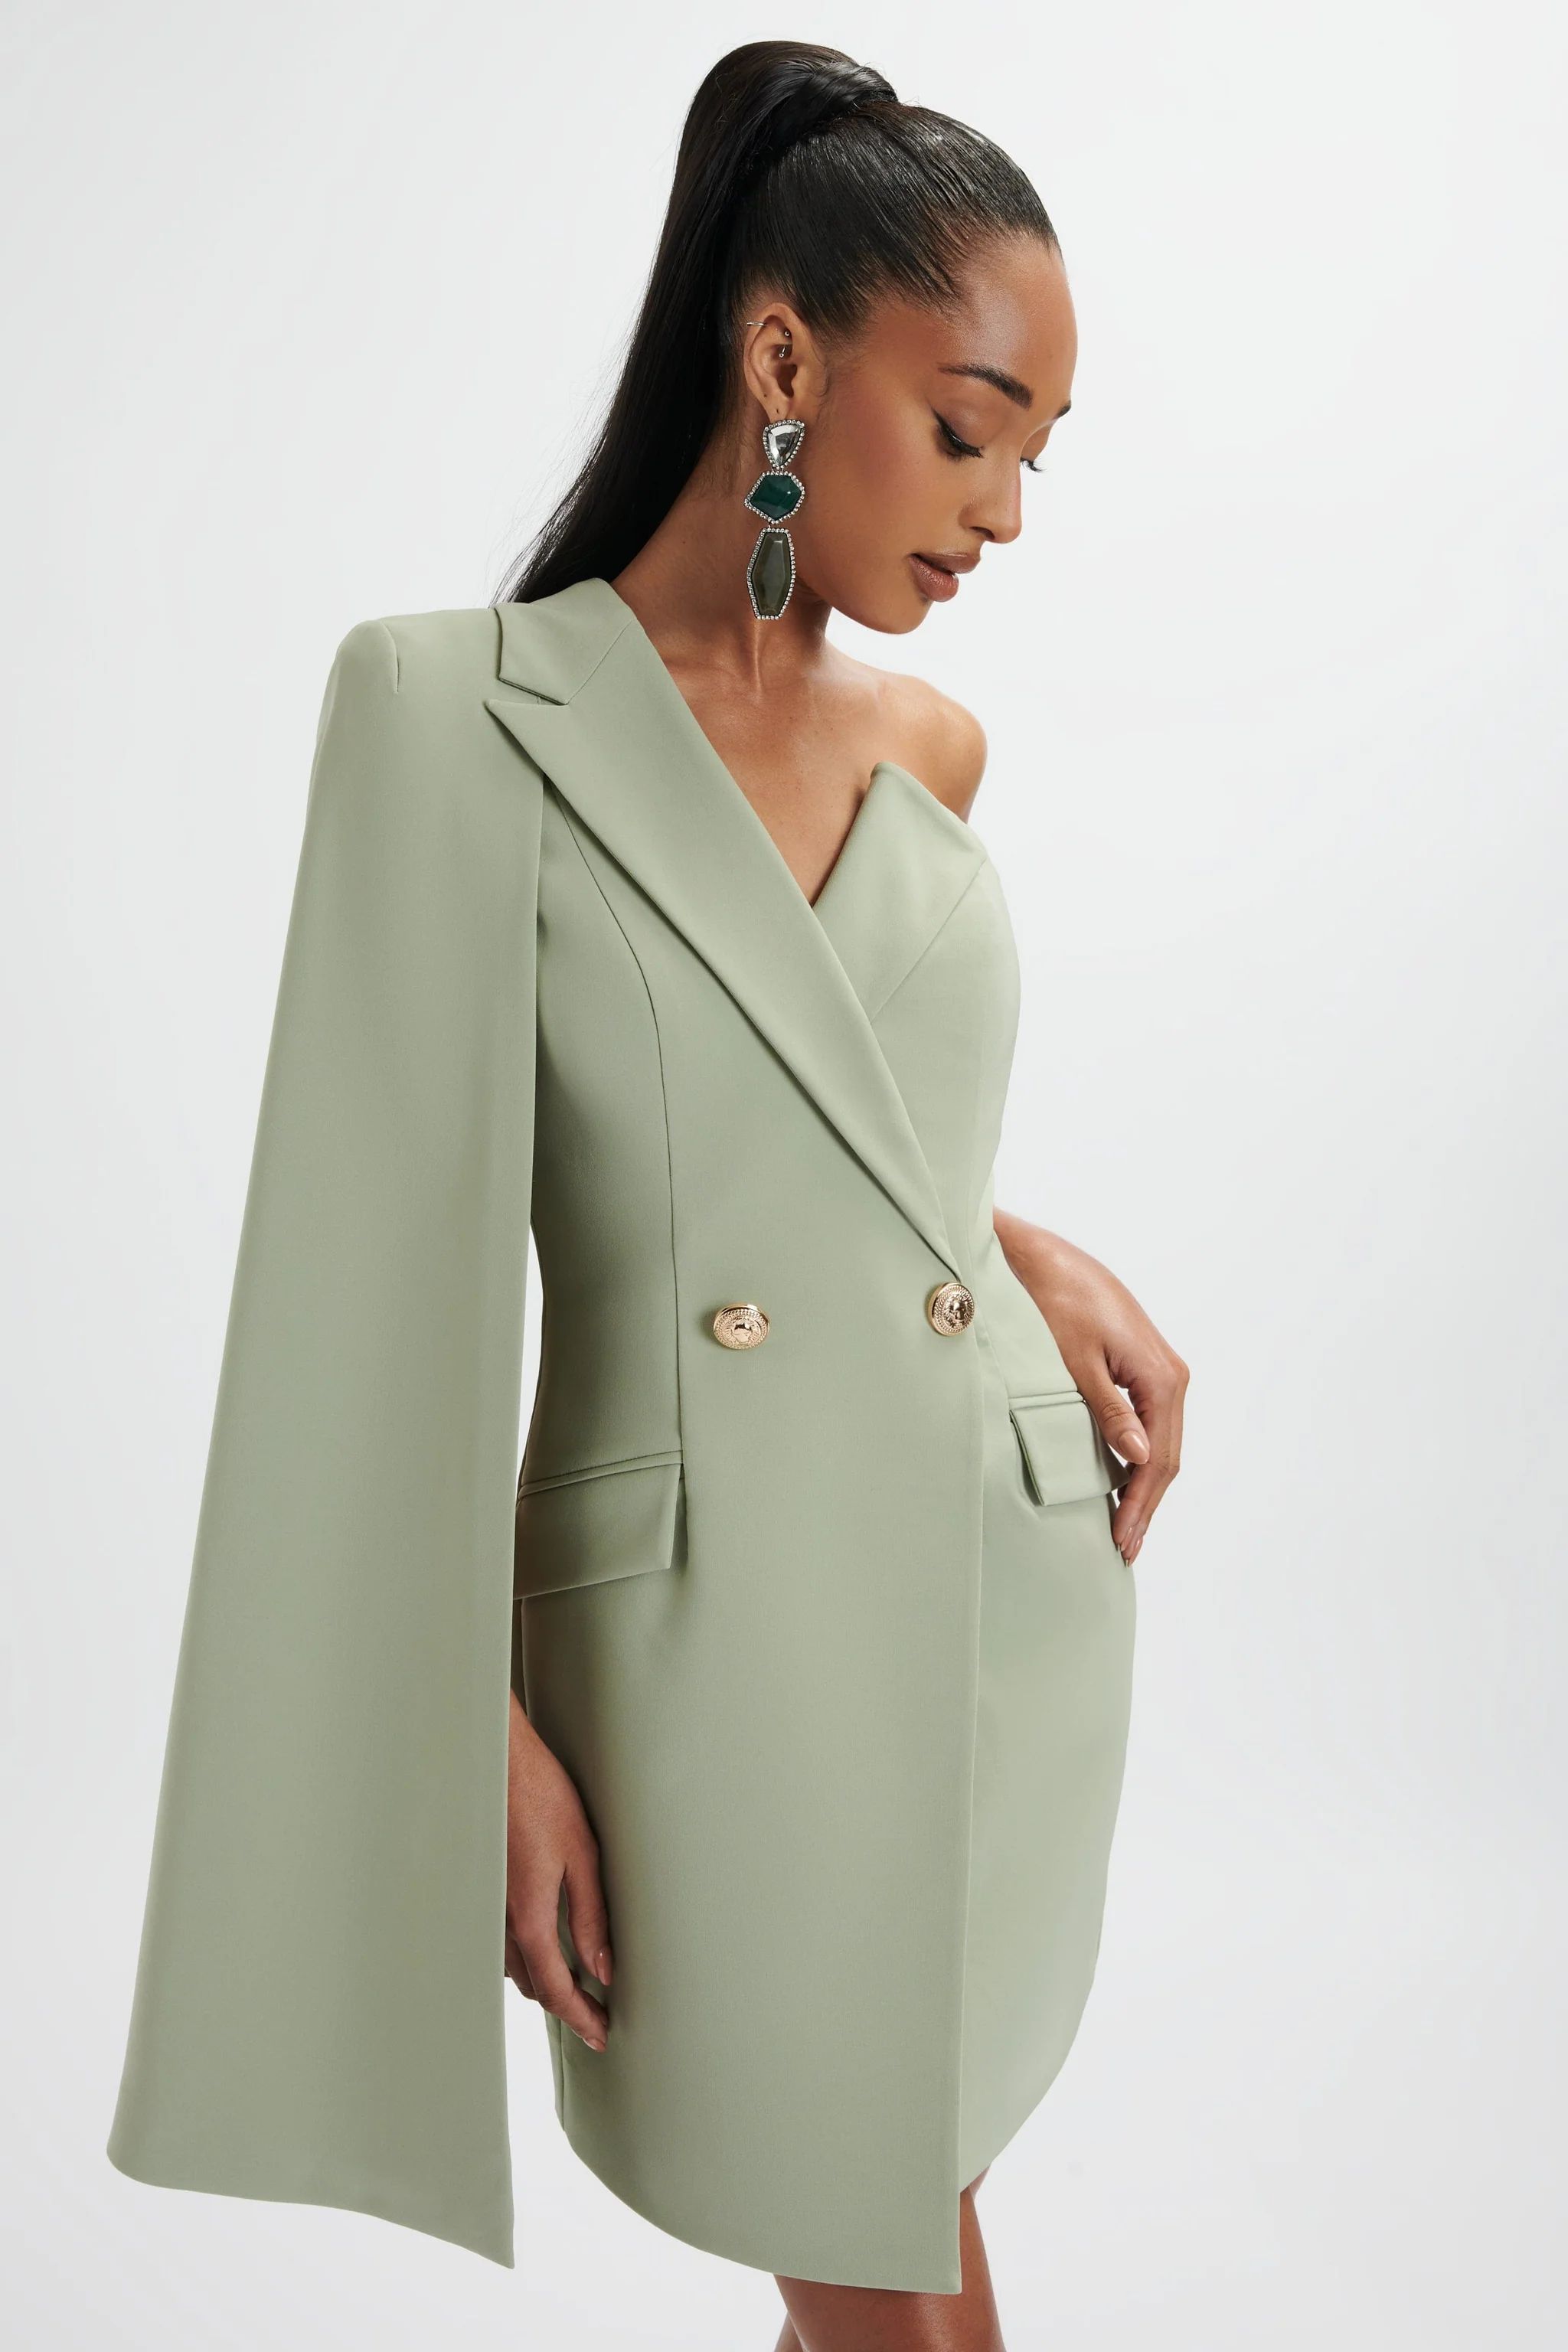 AIRE One Shoulder Cape Blazer Dress in Sage Green | Lavish Alice Retail Ltd